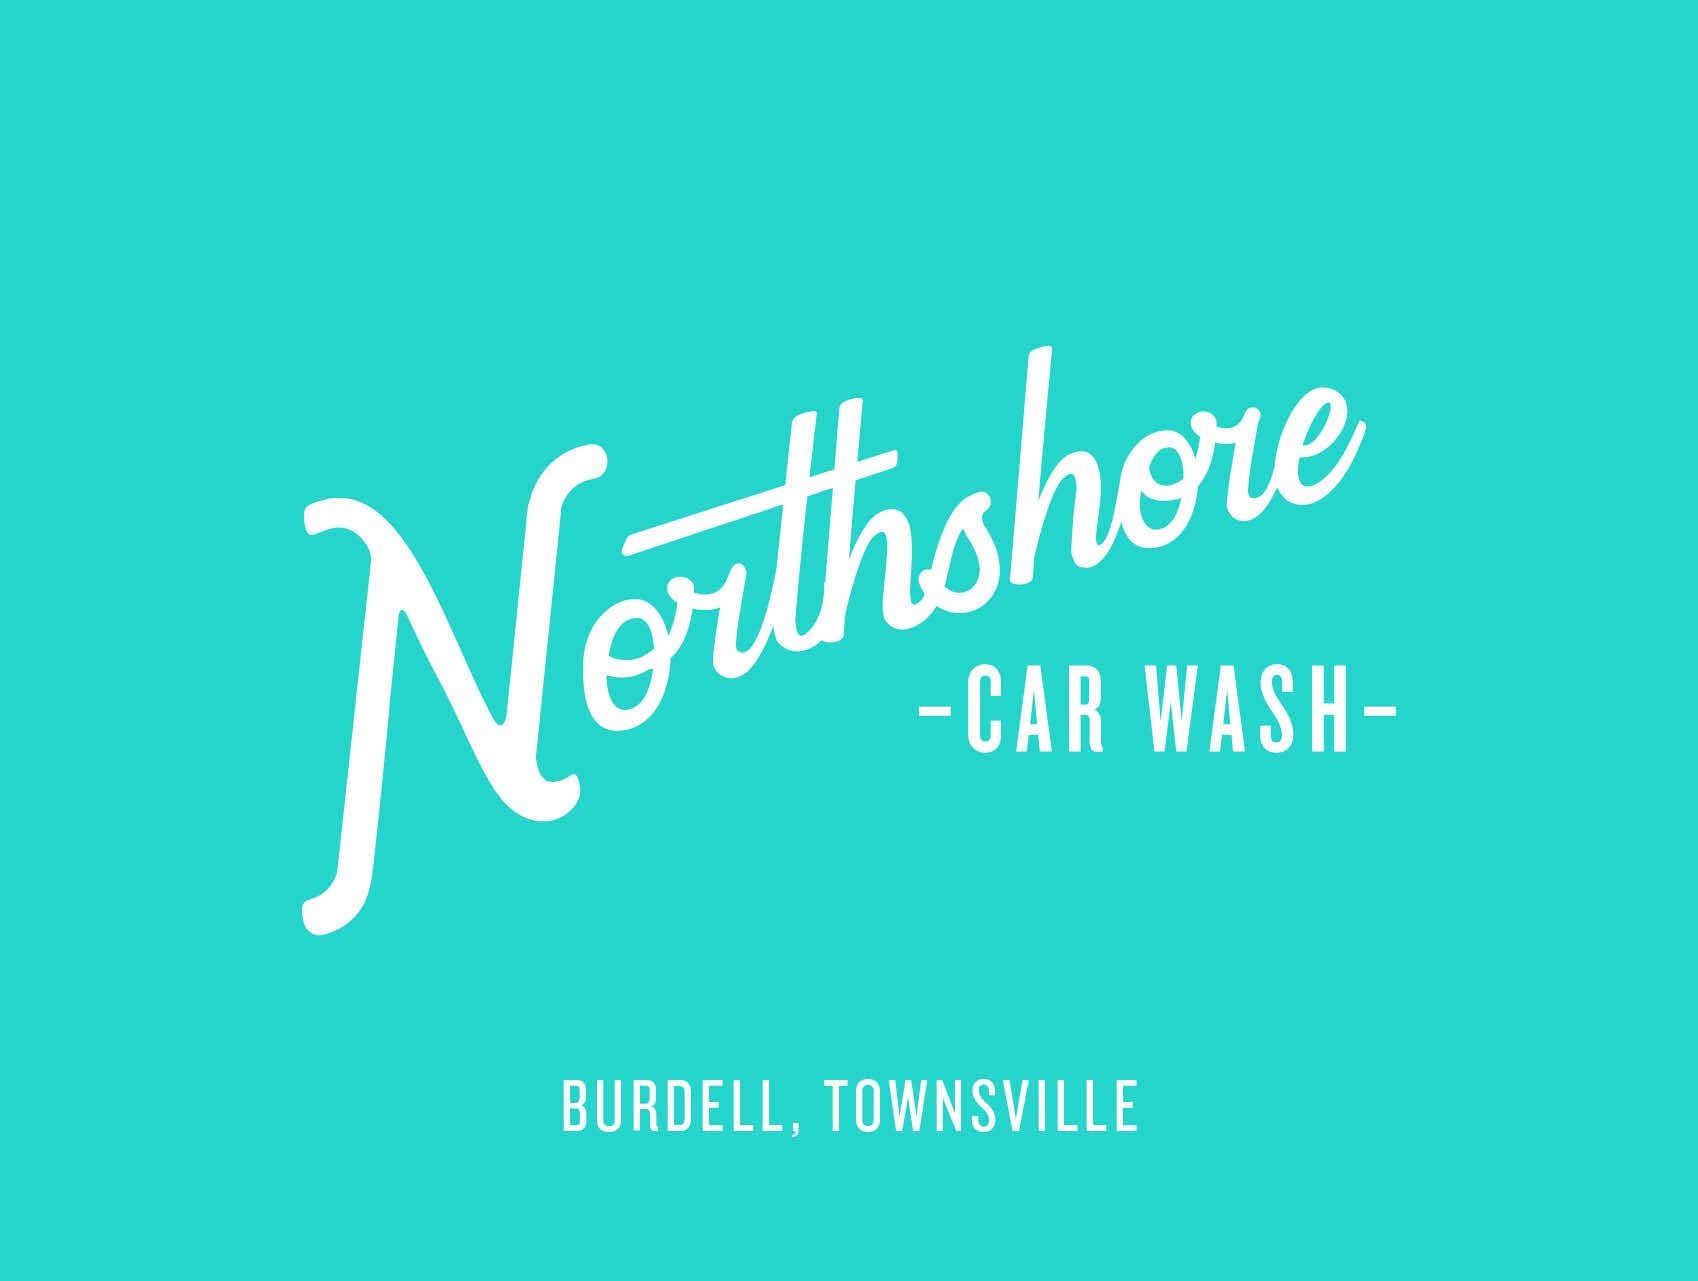 Northshore Car Wash